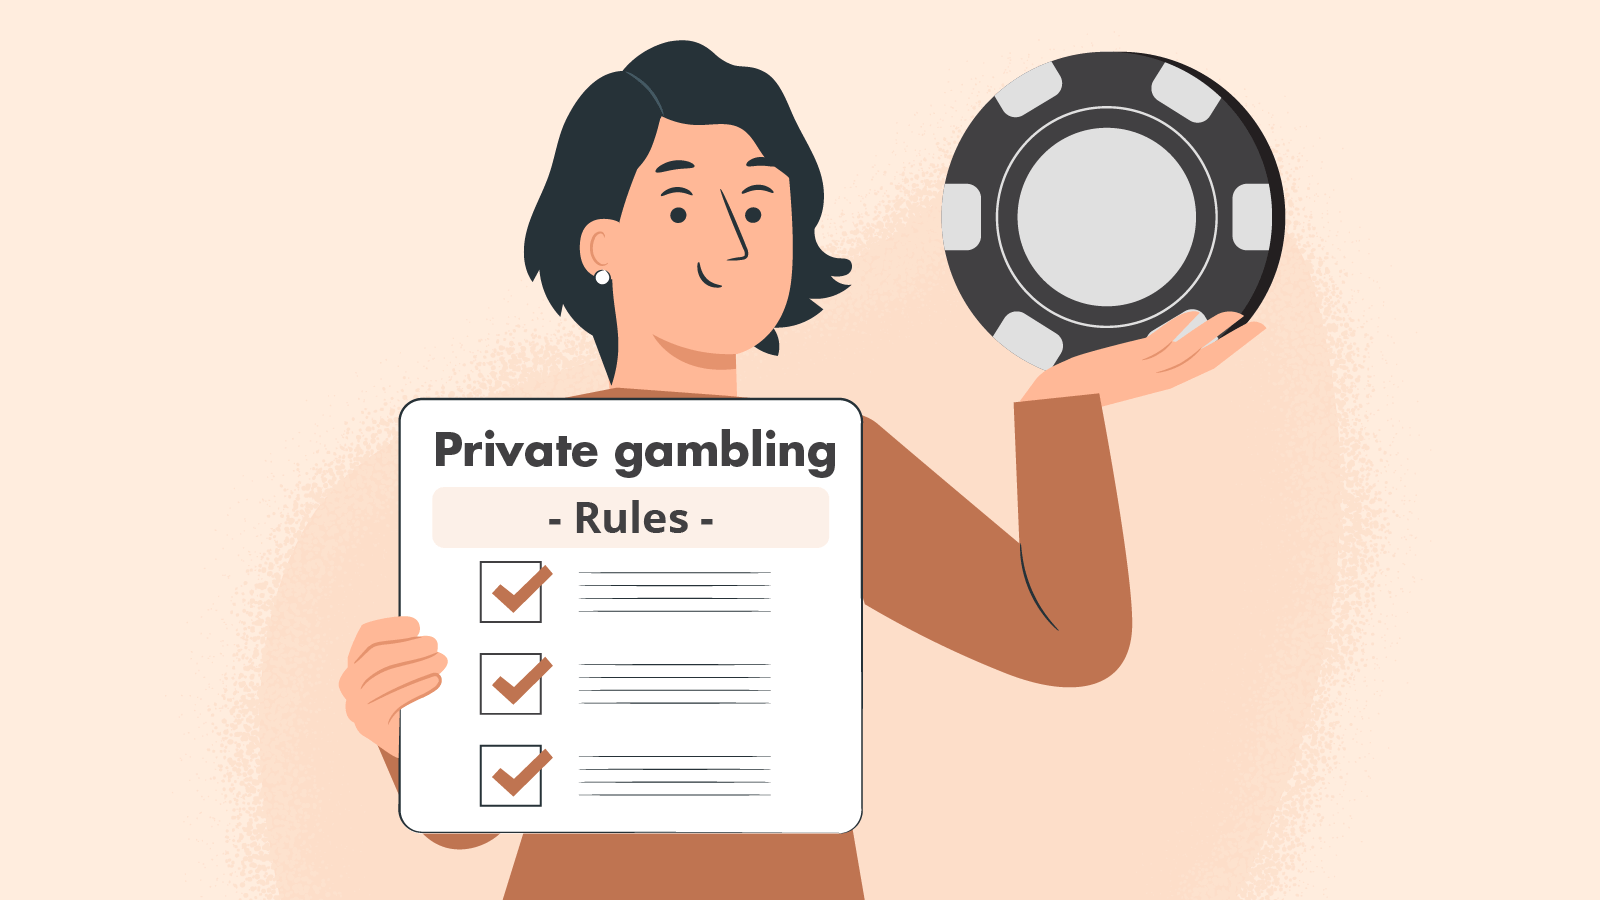 Private gambling